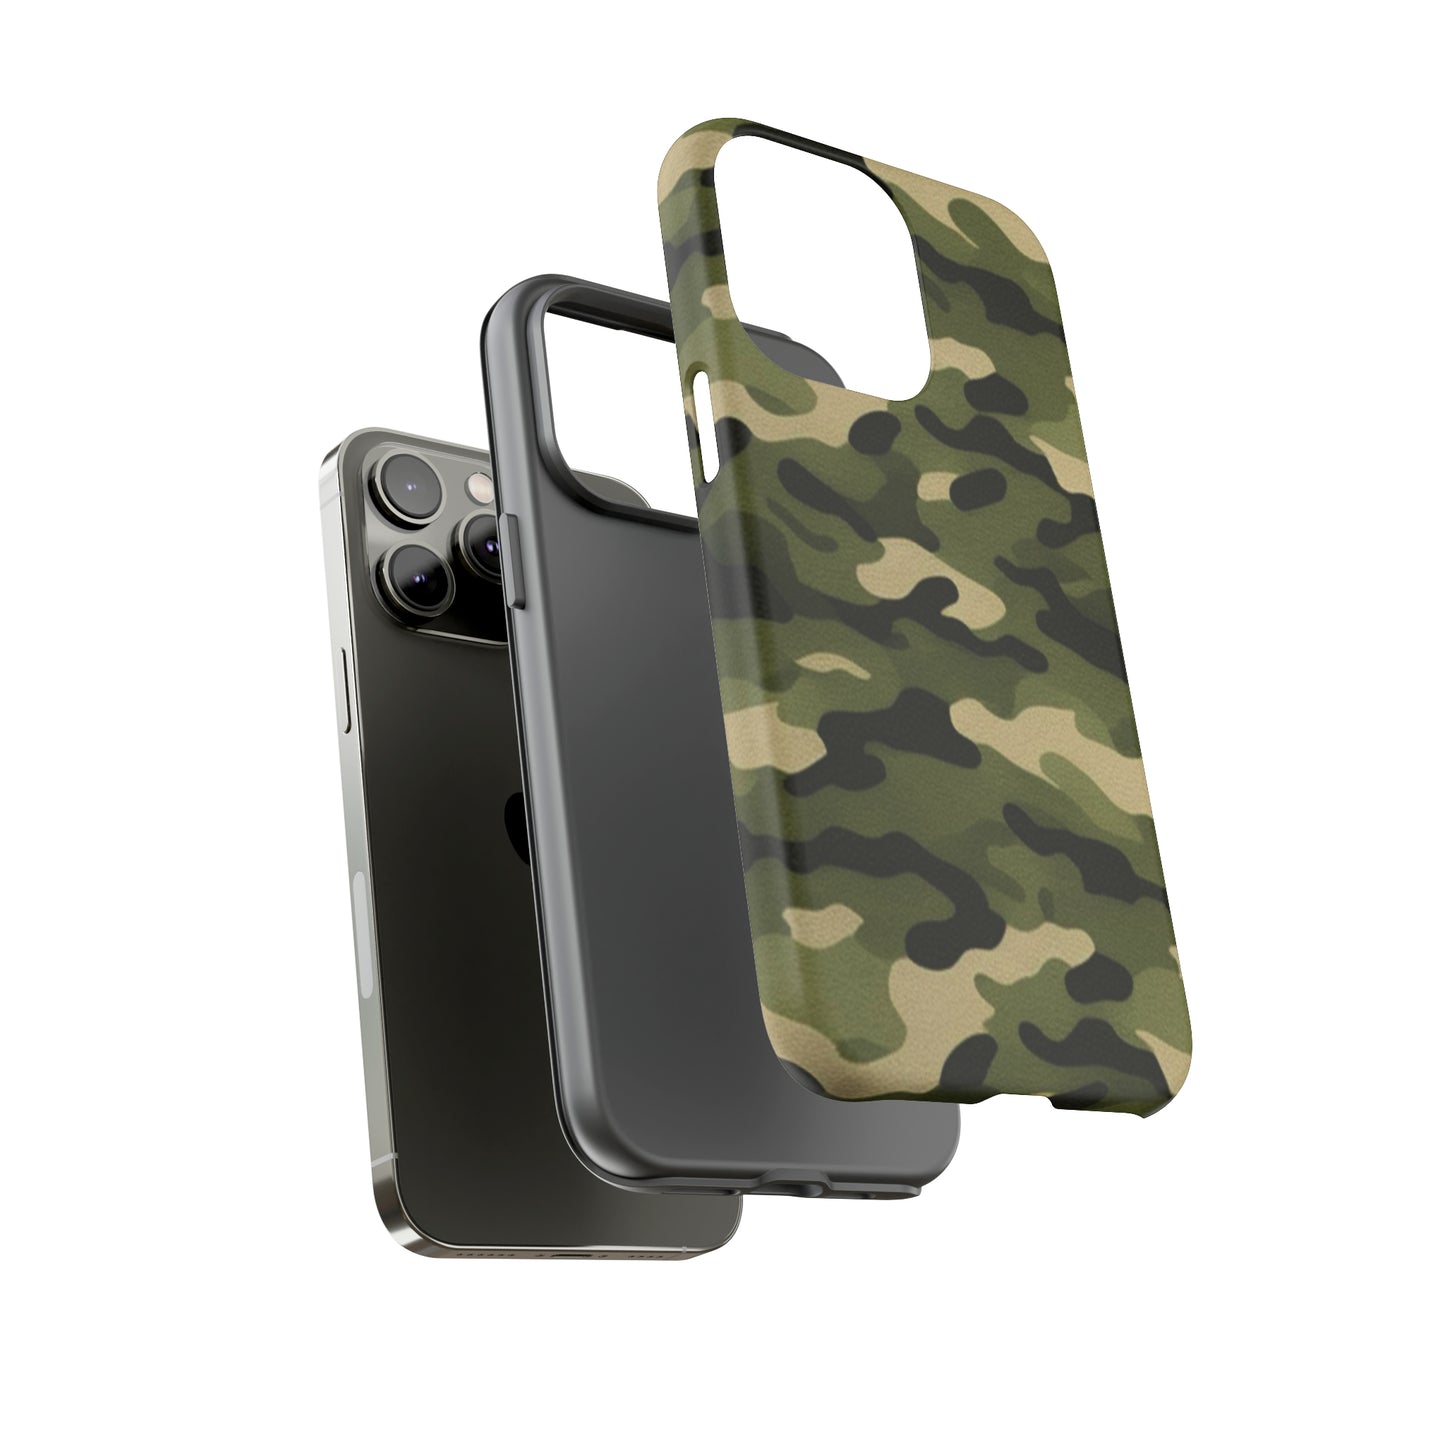 Green Army Camo Tough Phone Case